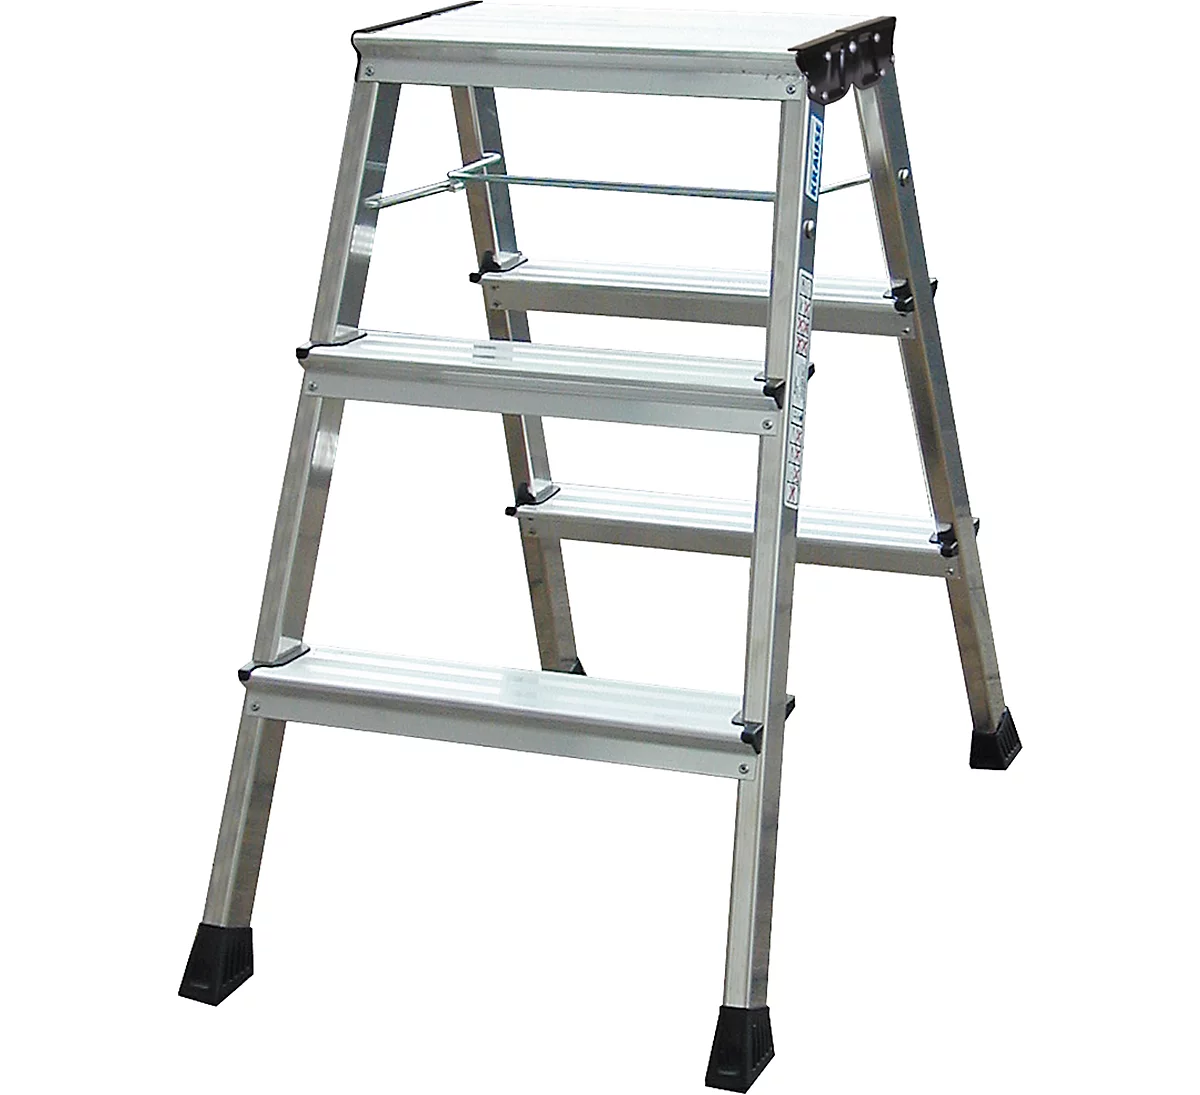 Escalerilla plegable doble Rolly, 2 x 3 escalones, color aluminio